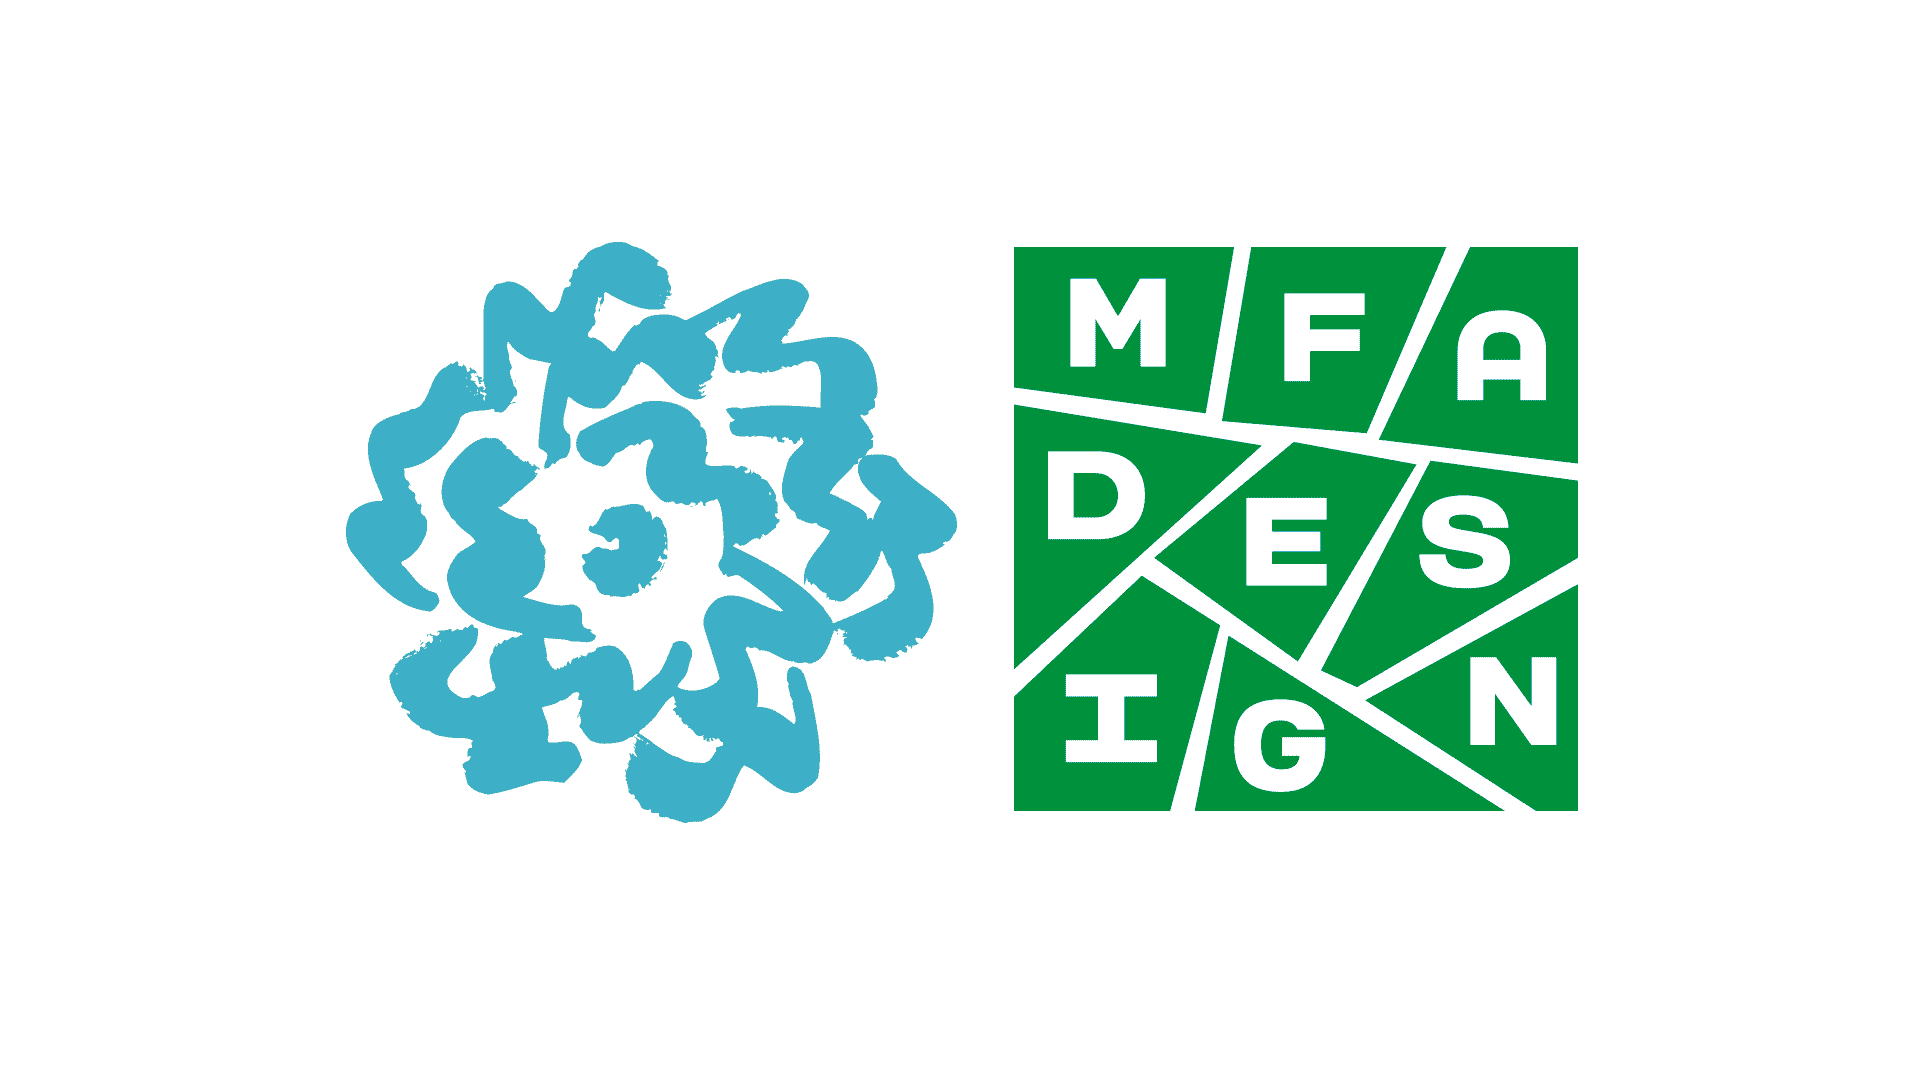 MFA Design logo in green